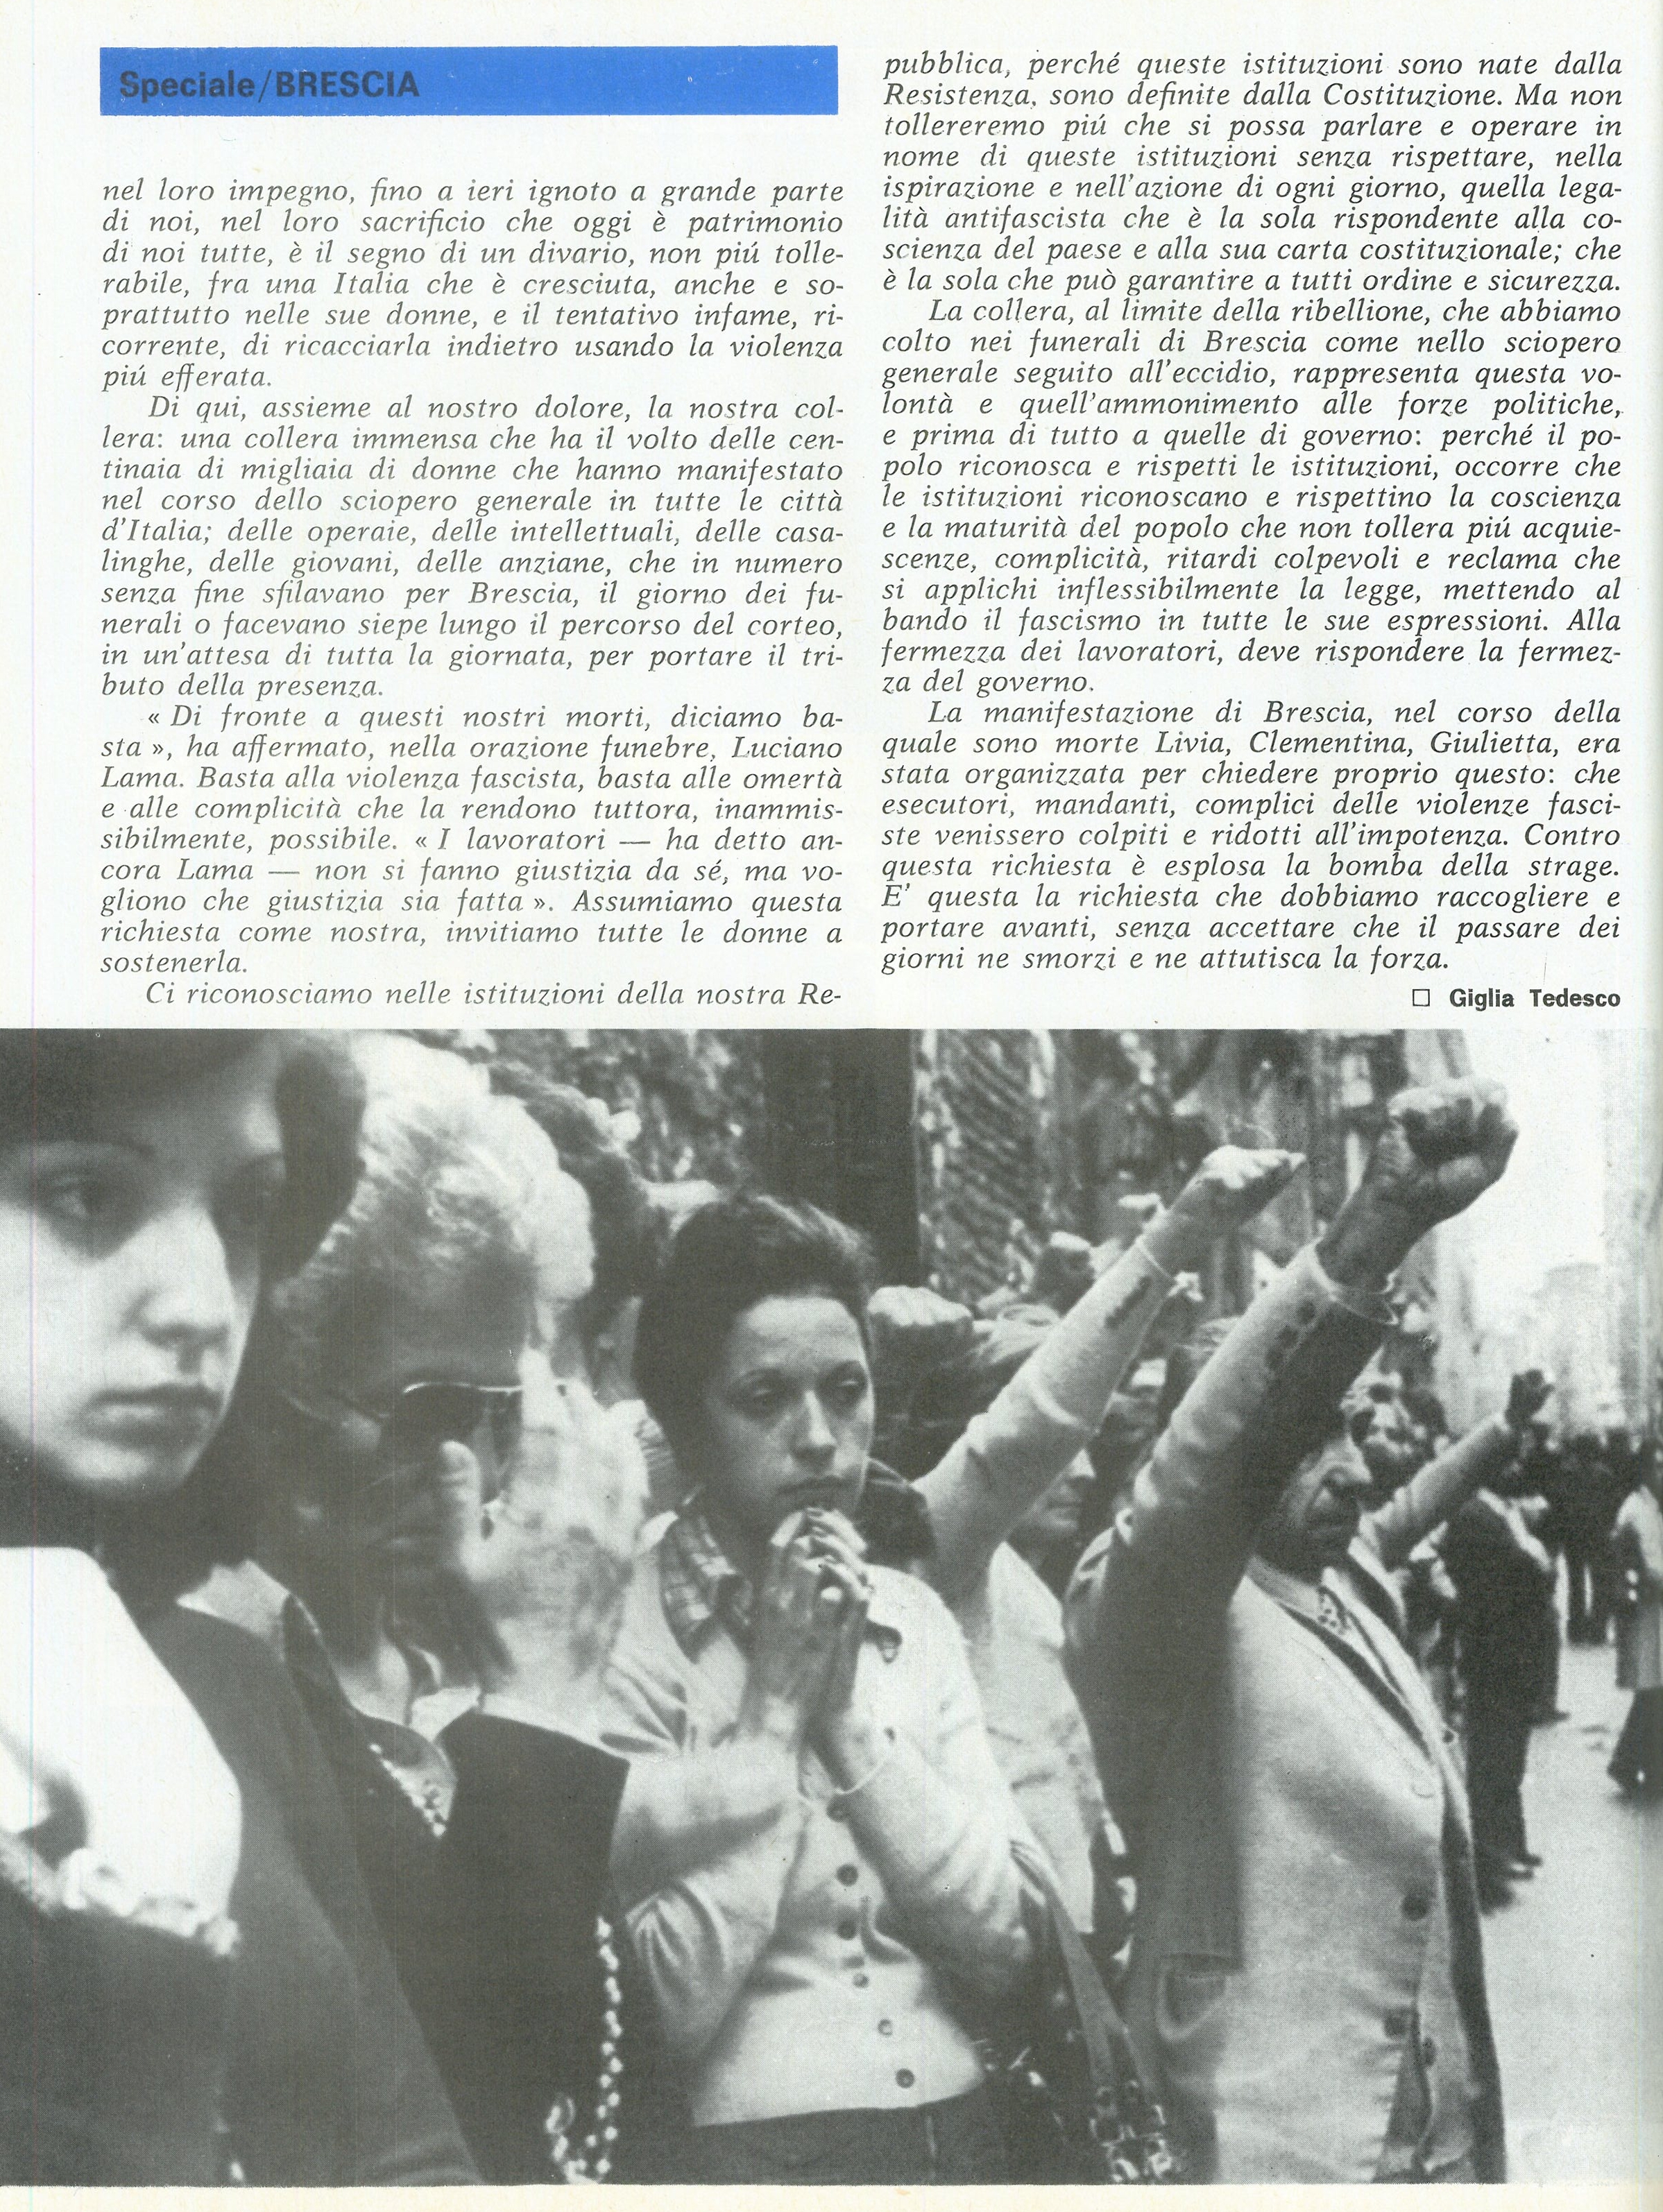 Foto: Dolore e rabbia, inchiesta a Brescia sulla strage fascista